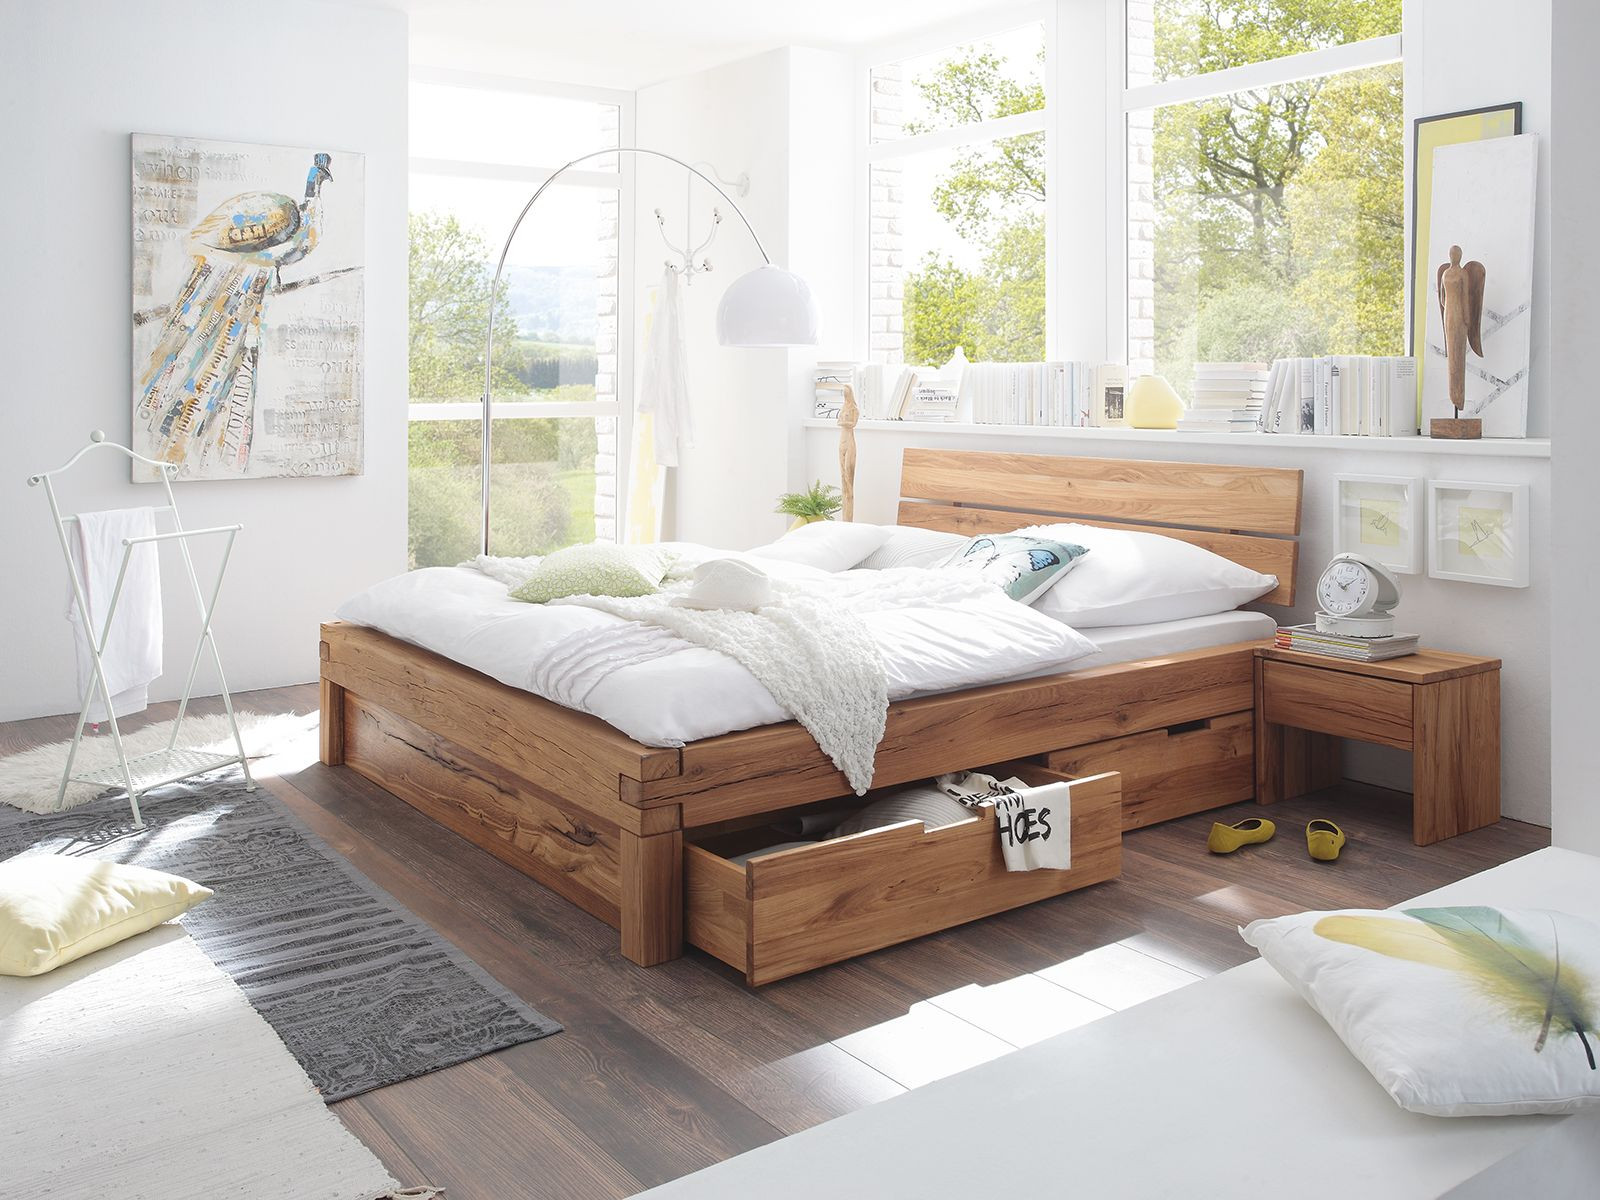 Bett 160x200
 Bett 160x200 Wildeiche geölt Bettgestell massiv Holz Möbel